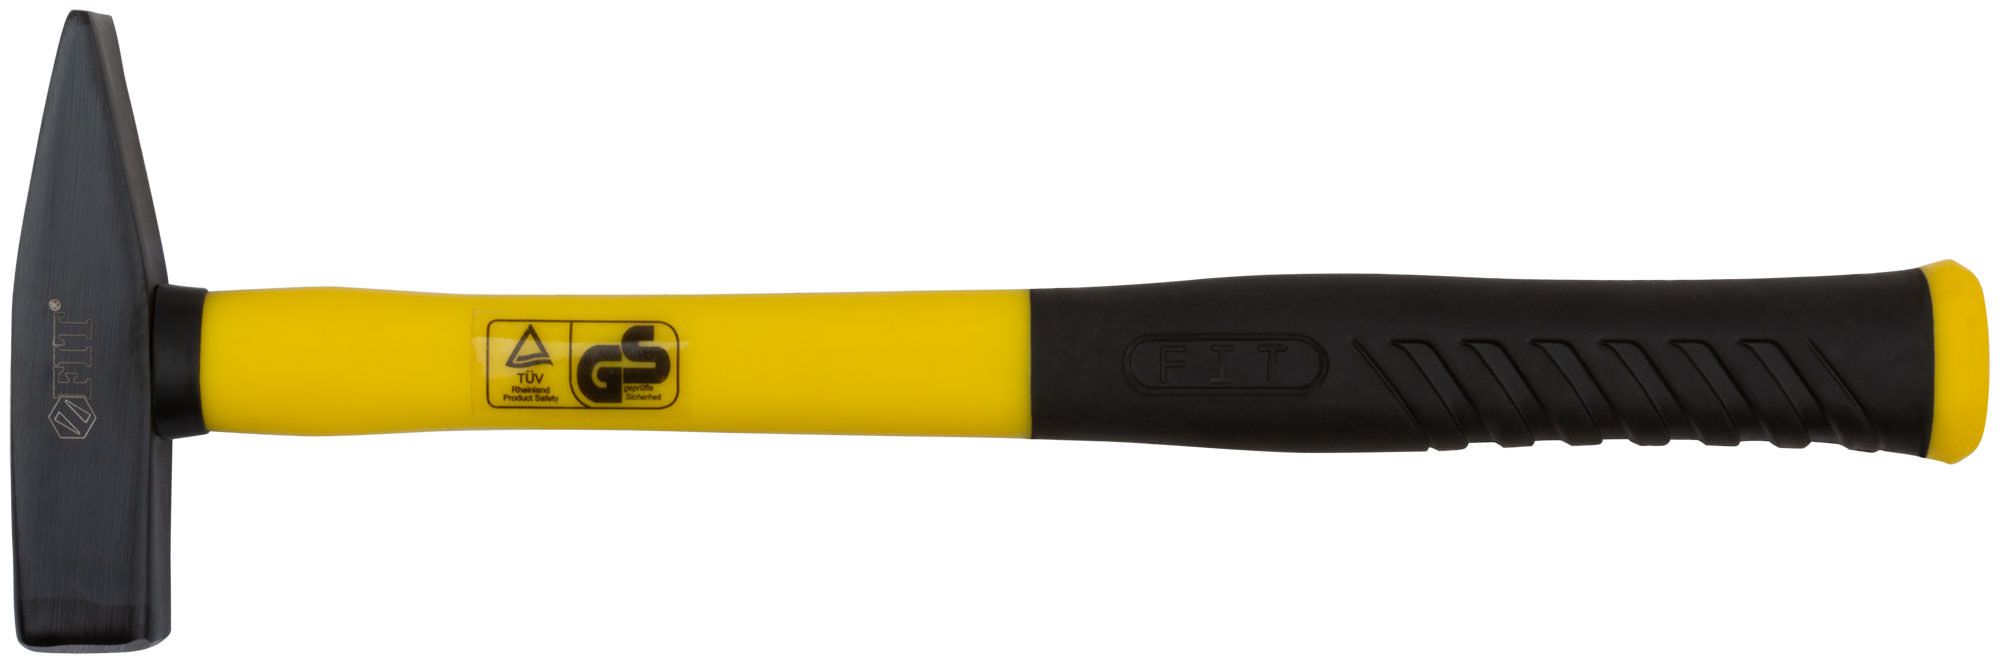 Молоток кованый, фиберглассовая усиленная ручка, Профи  400 гр.